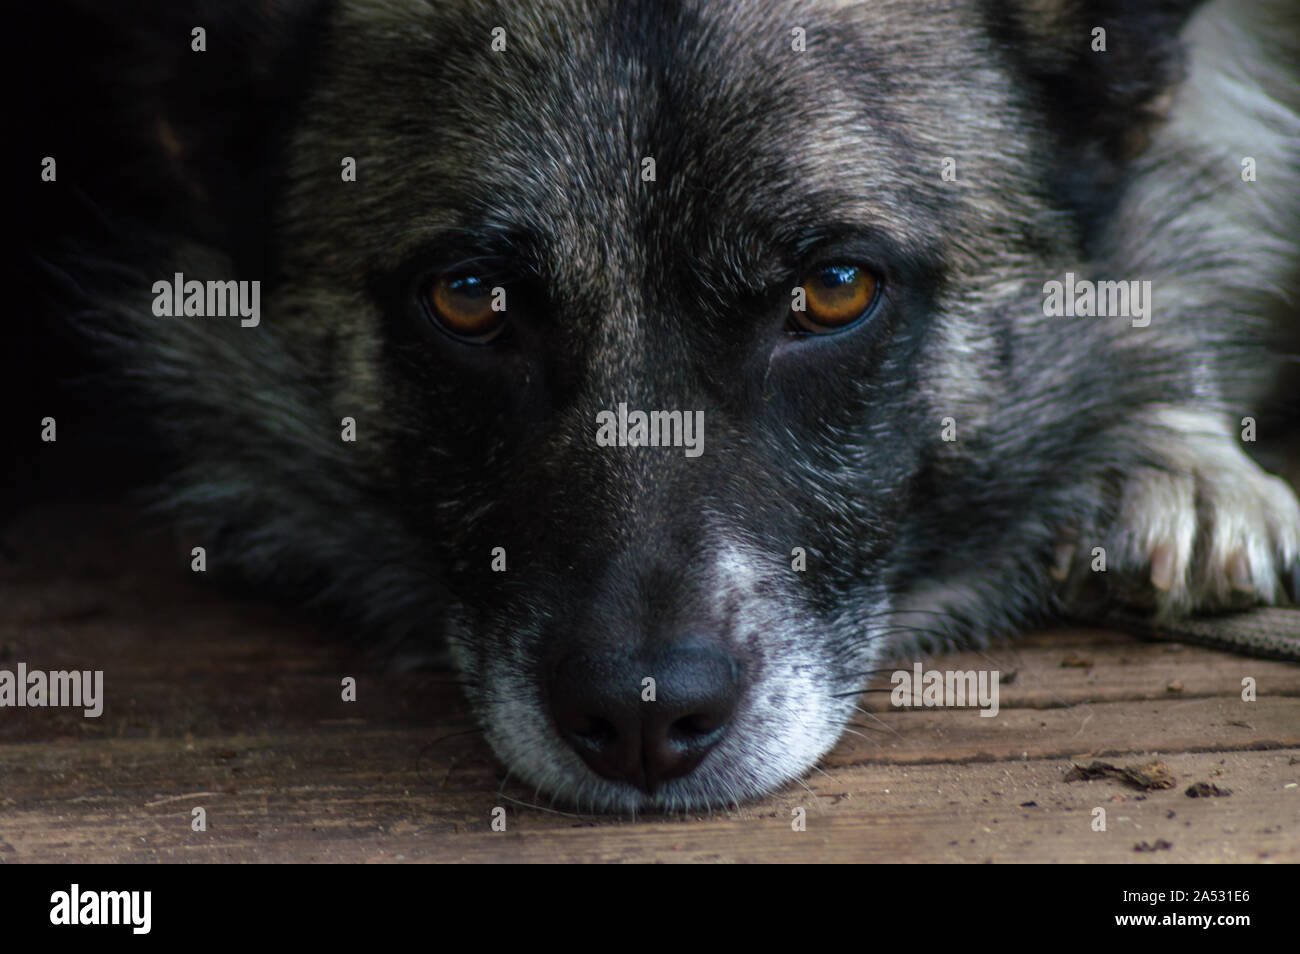 Nahaufnahme eines Hundes Gesicht, Nase und Augen liegen auf einem Holz- Oberfläche mit einer sehr ruhige und schöne Optik Stockfoto